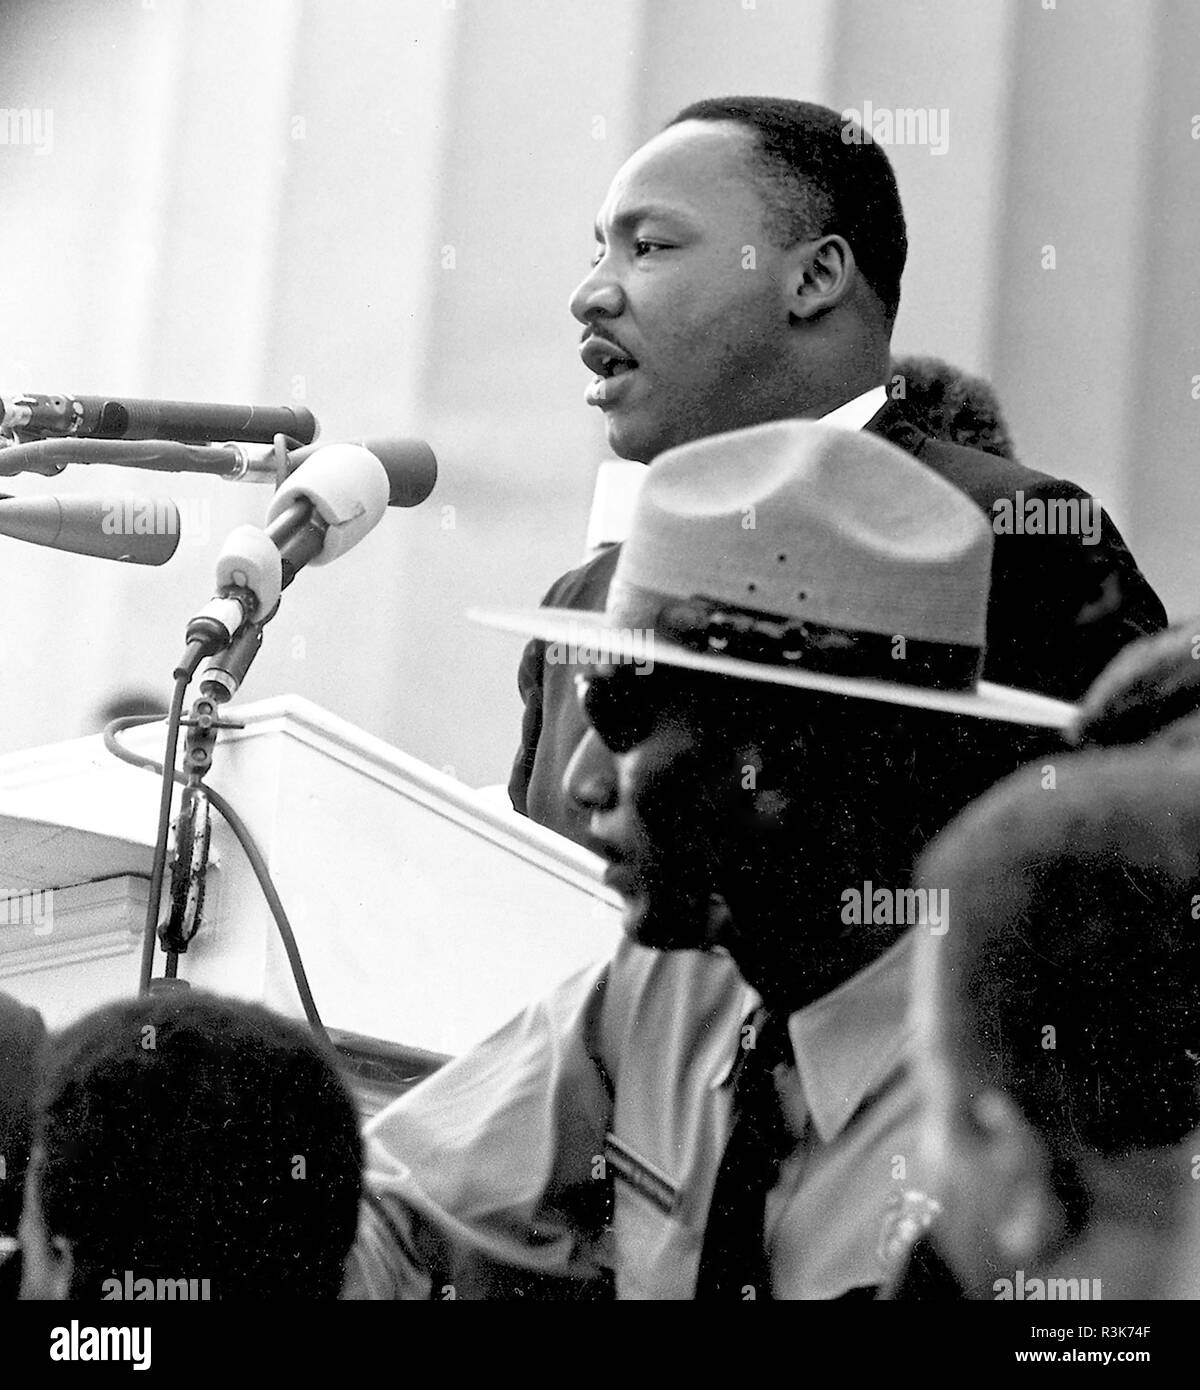 MARTIN LUTHER KING (1929-1968) American Civil Rights leader, seine "Ich habe einen Traum' Rede an der Marsch auf Washington, 28. August 1963. Foto: Bibliothek des Kongresses Stockfoto